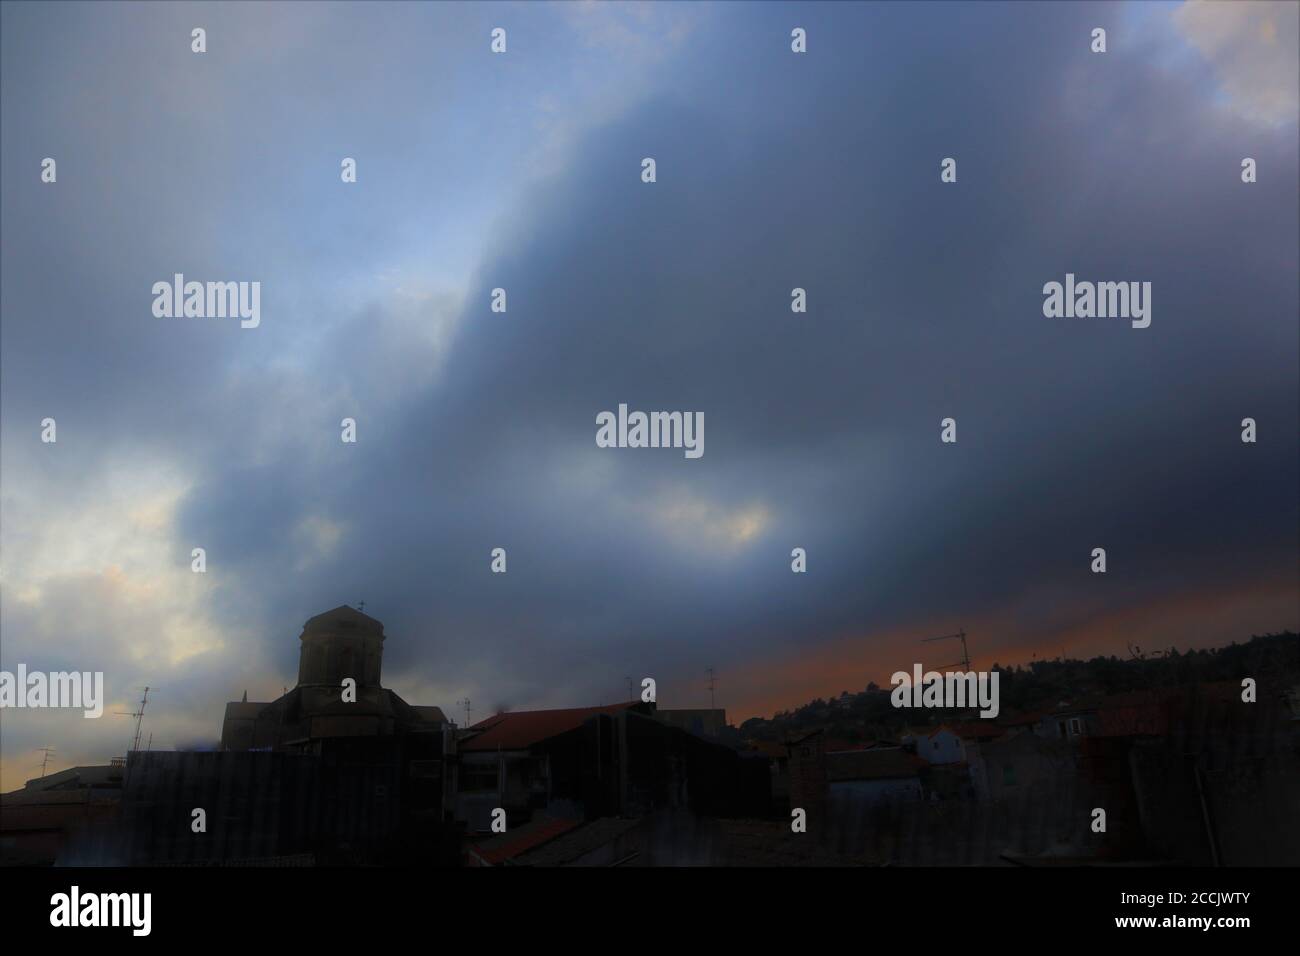 Silhouette eines dunklen Kirchturms und eines Hügels gegen die Sturmwolken. Mystische Wolken auf grauem Himmel Stockfoto